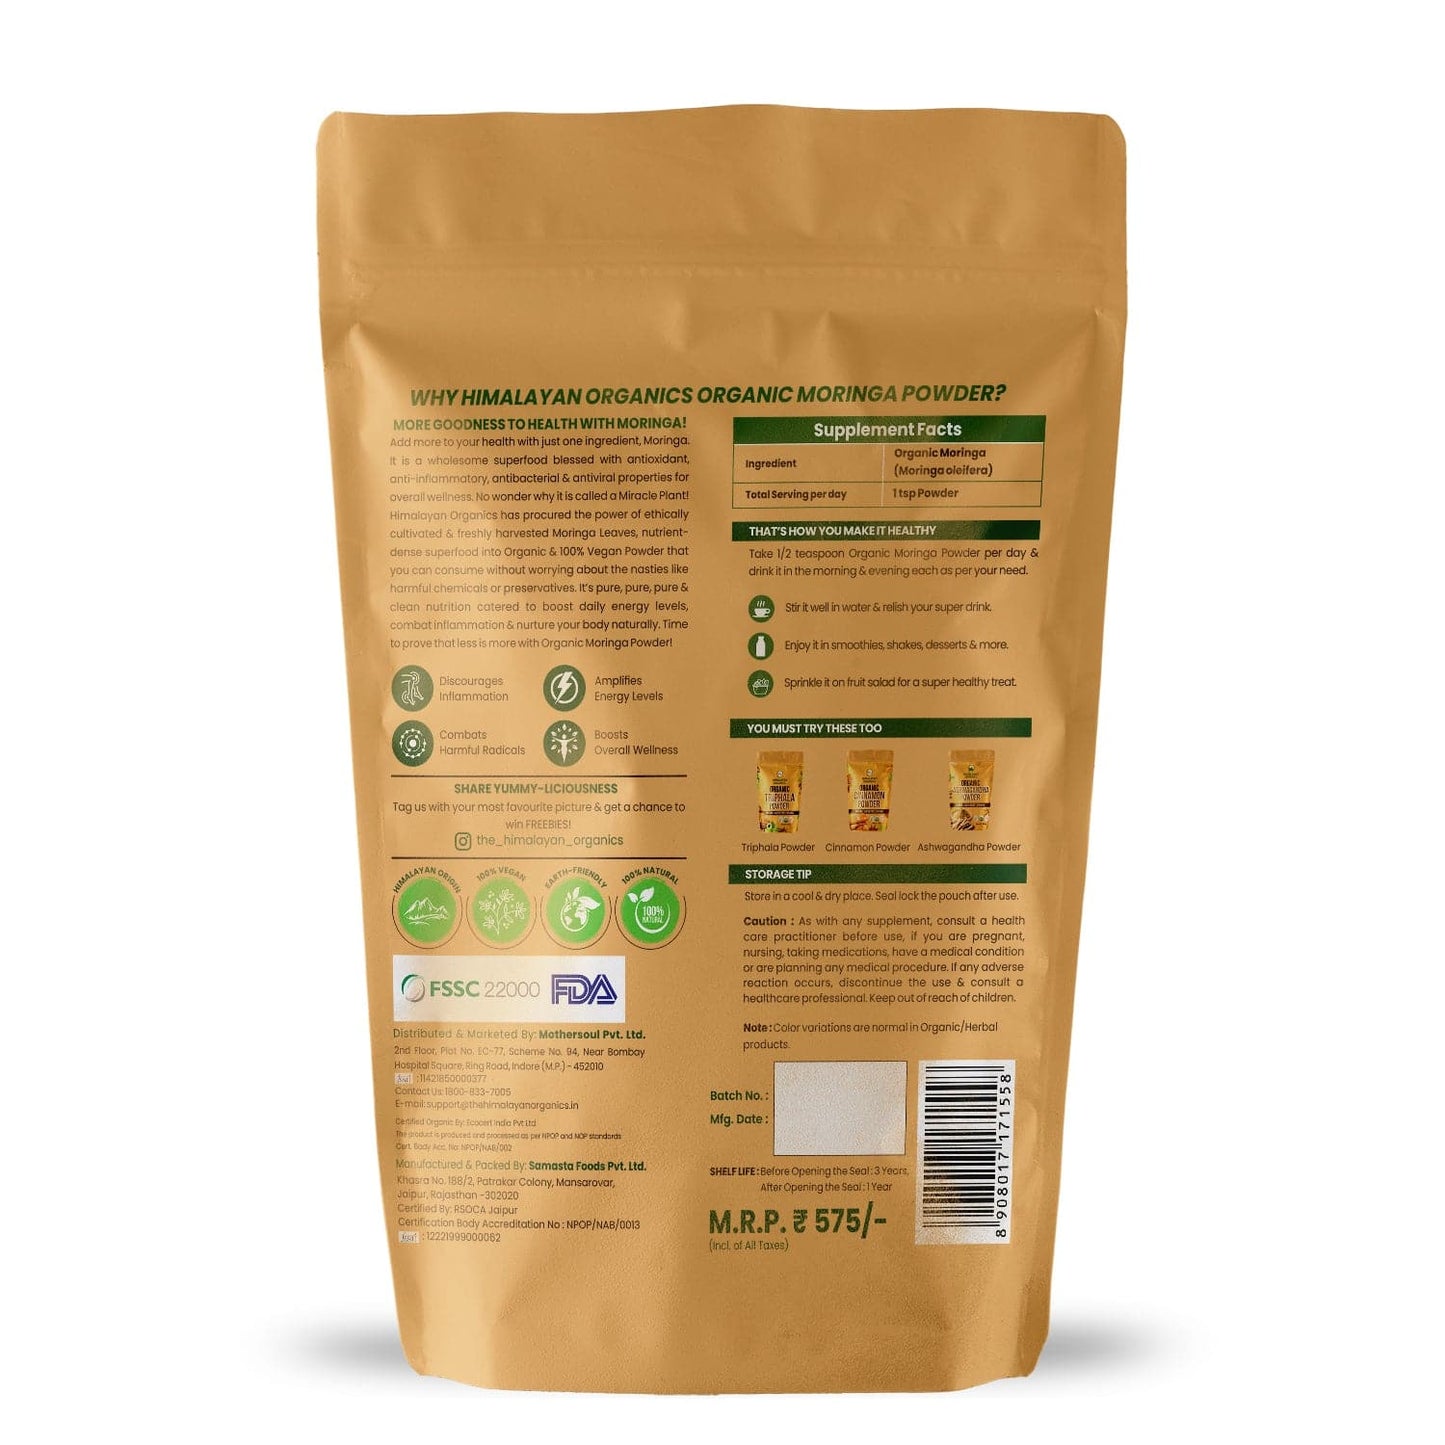 Himalayan Organics Certified Organic Moringa Powder (Moringa Oleifera) 350g